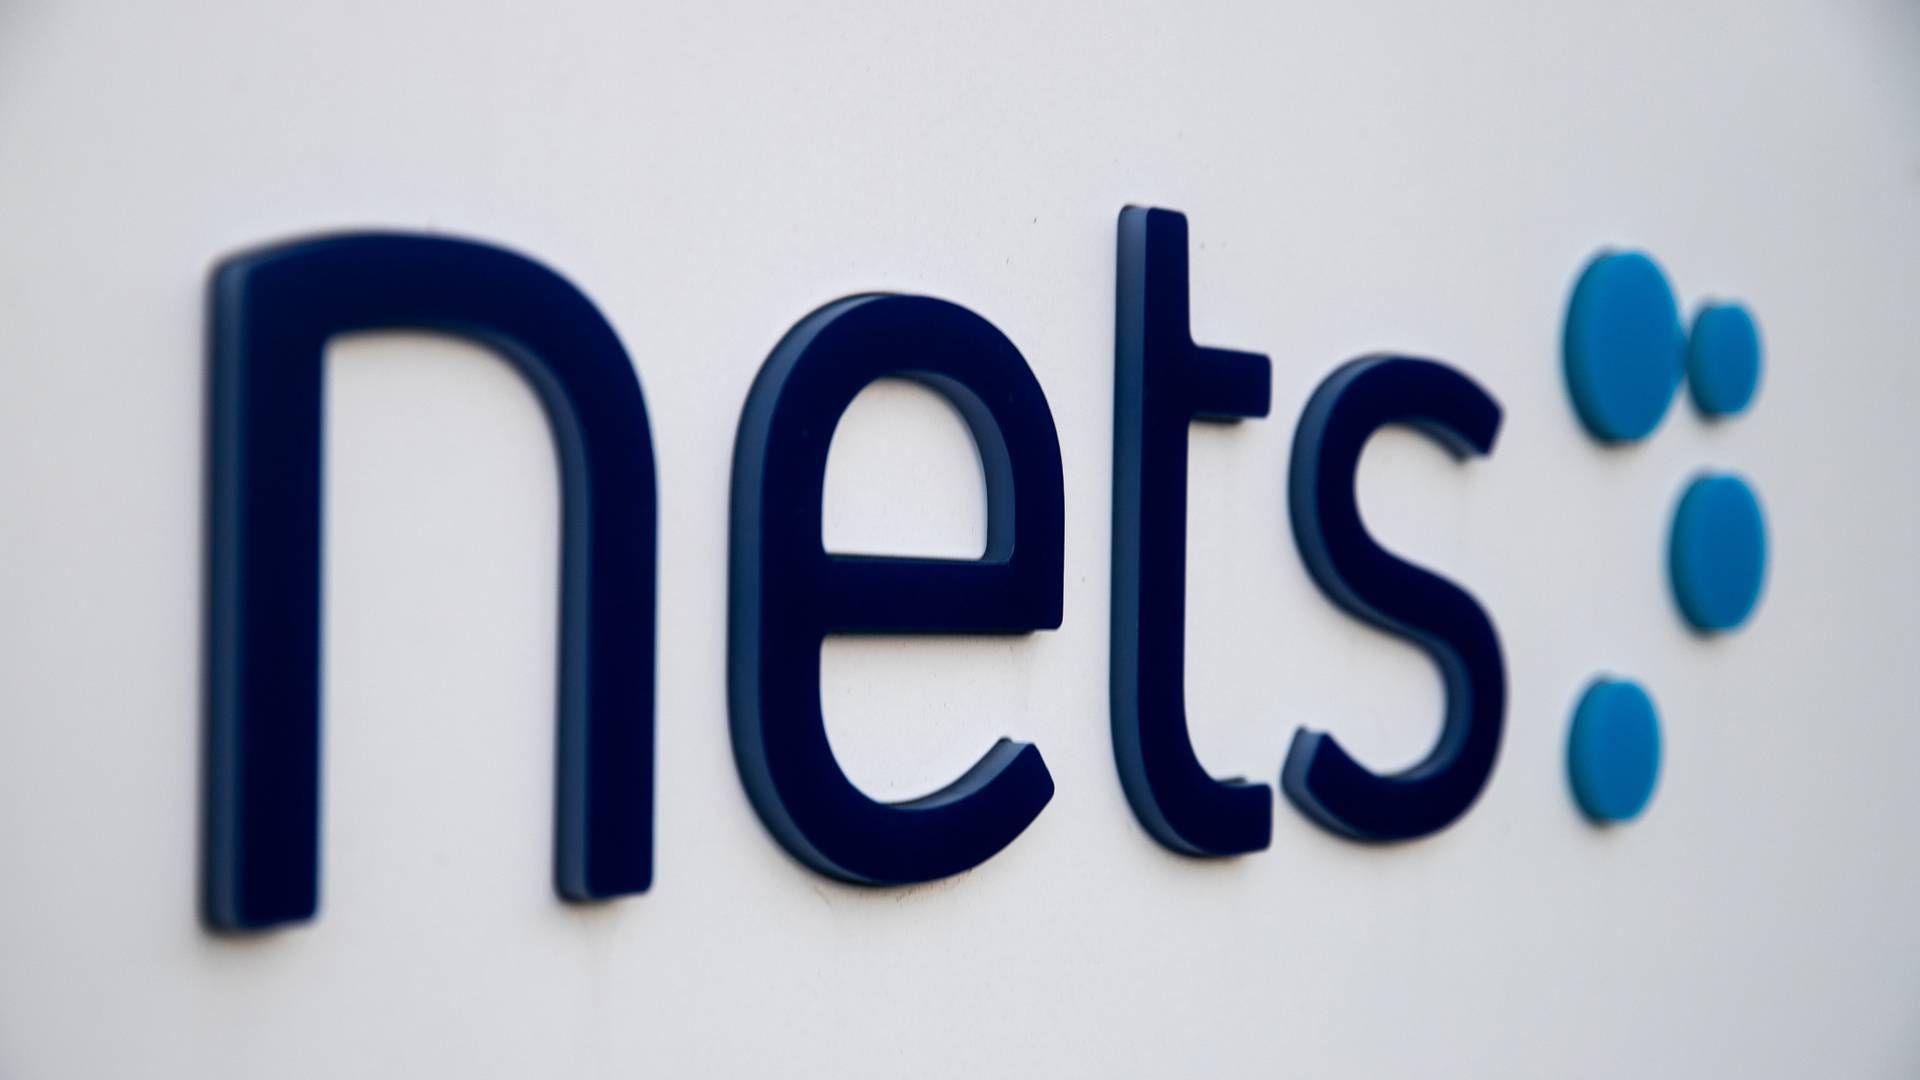 Det nye sammensmeltede selskab - Nets, Nexi og SIA - forventes at have en årlig omsætning på omkring 21,5 milliarder kroner. | Foto: Nets PR